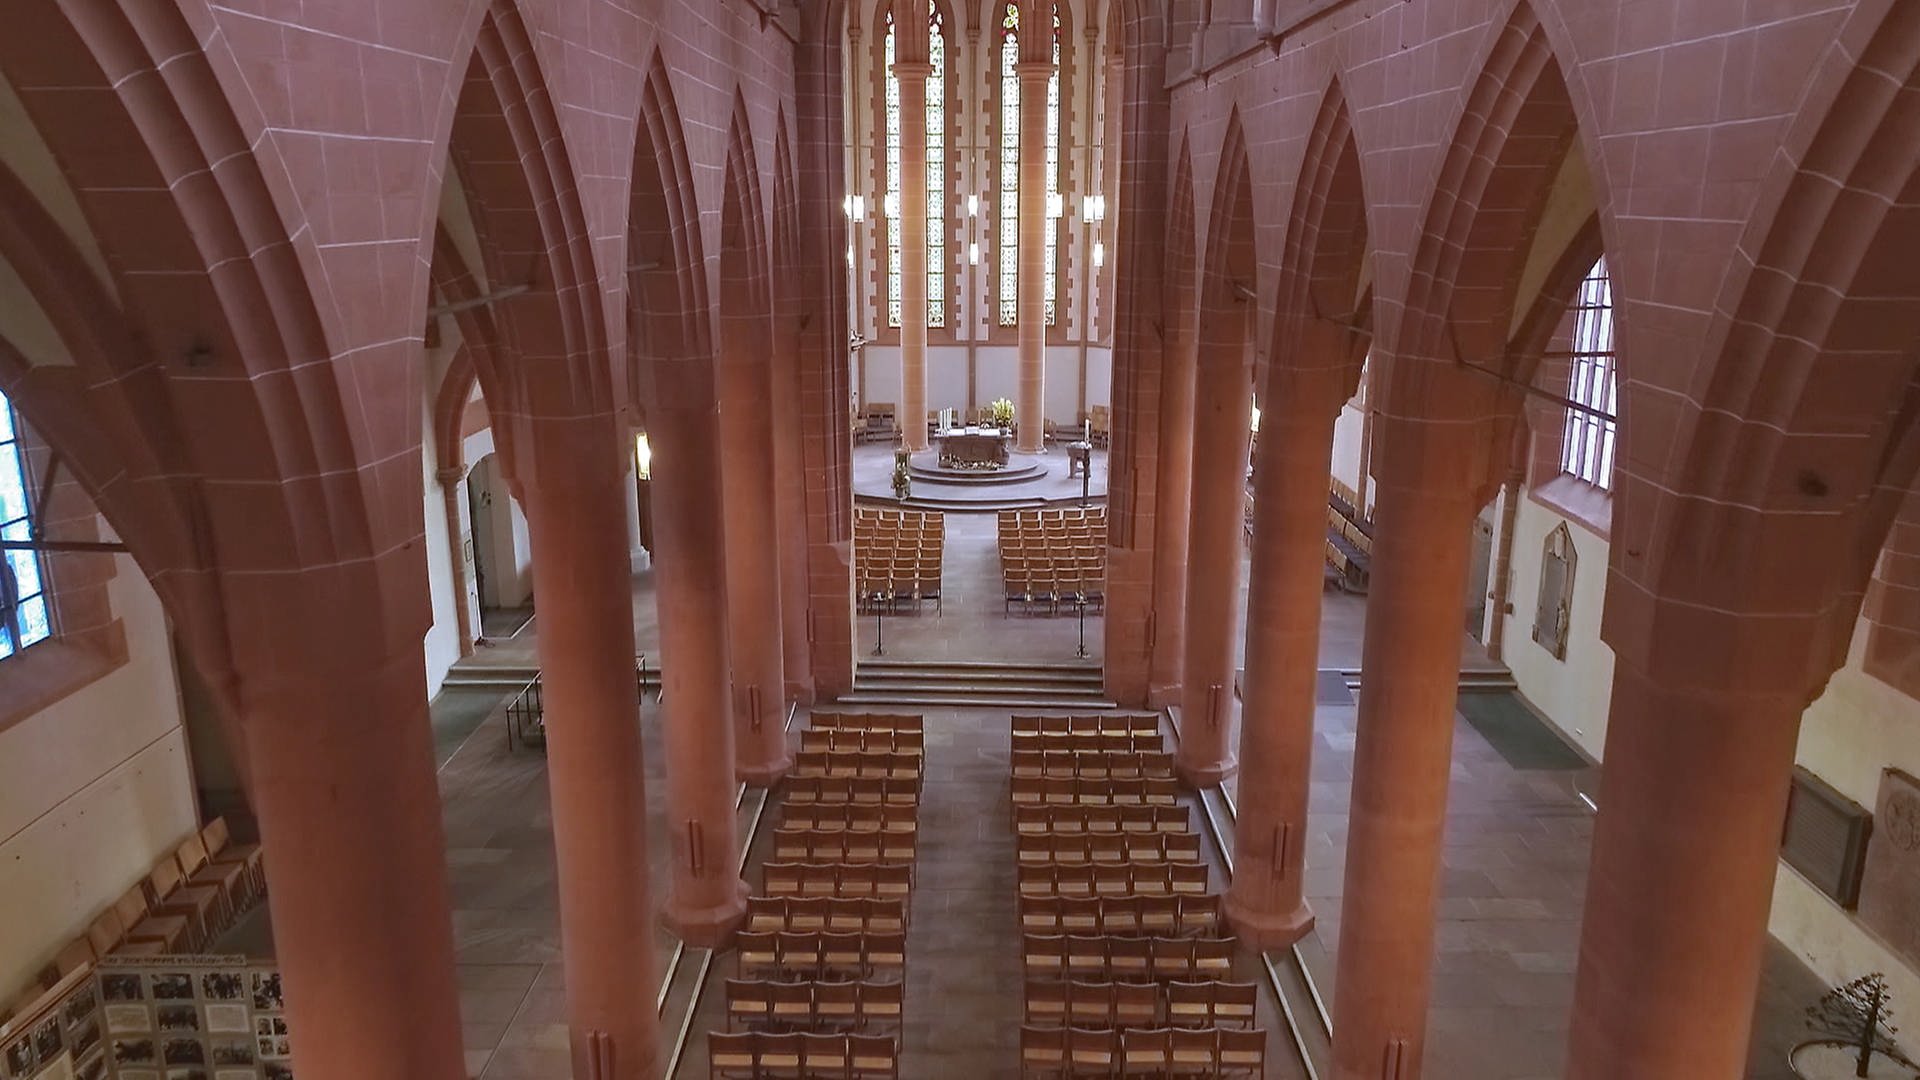 Himmel auf Erden - Heiliggeistkirche in Heidelberg